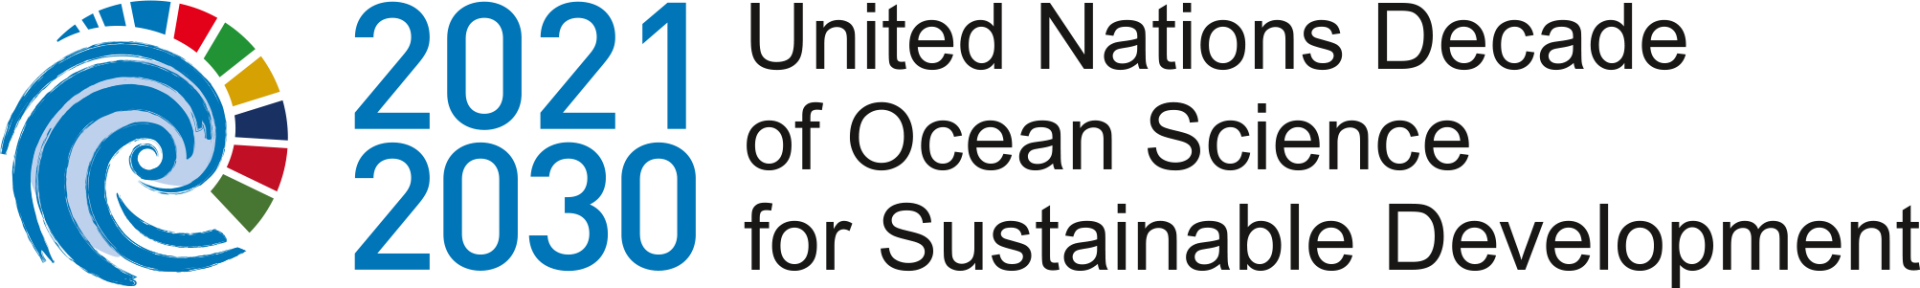 Ocean Decade logo